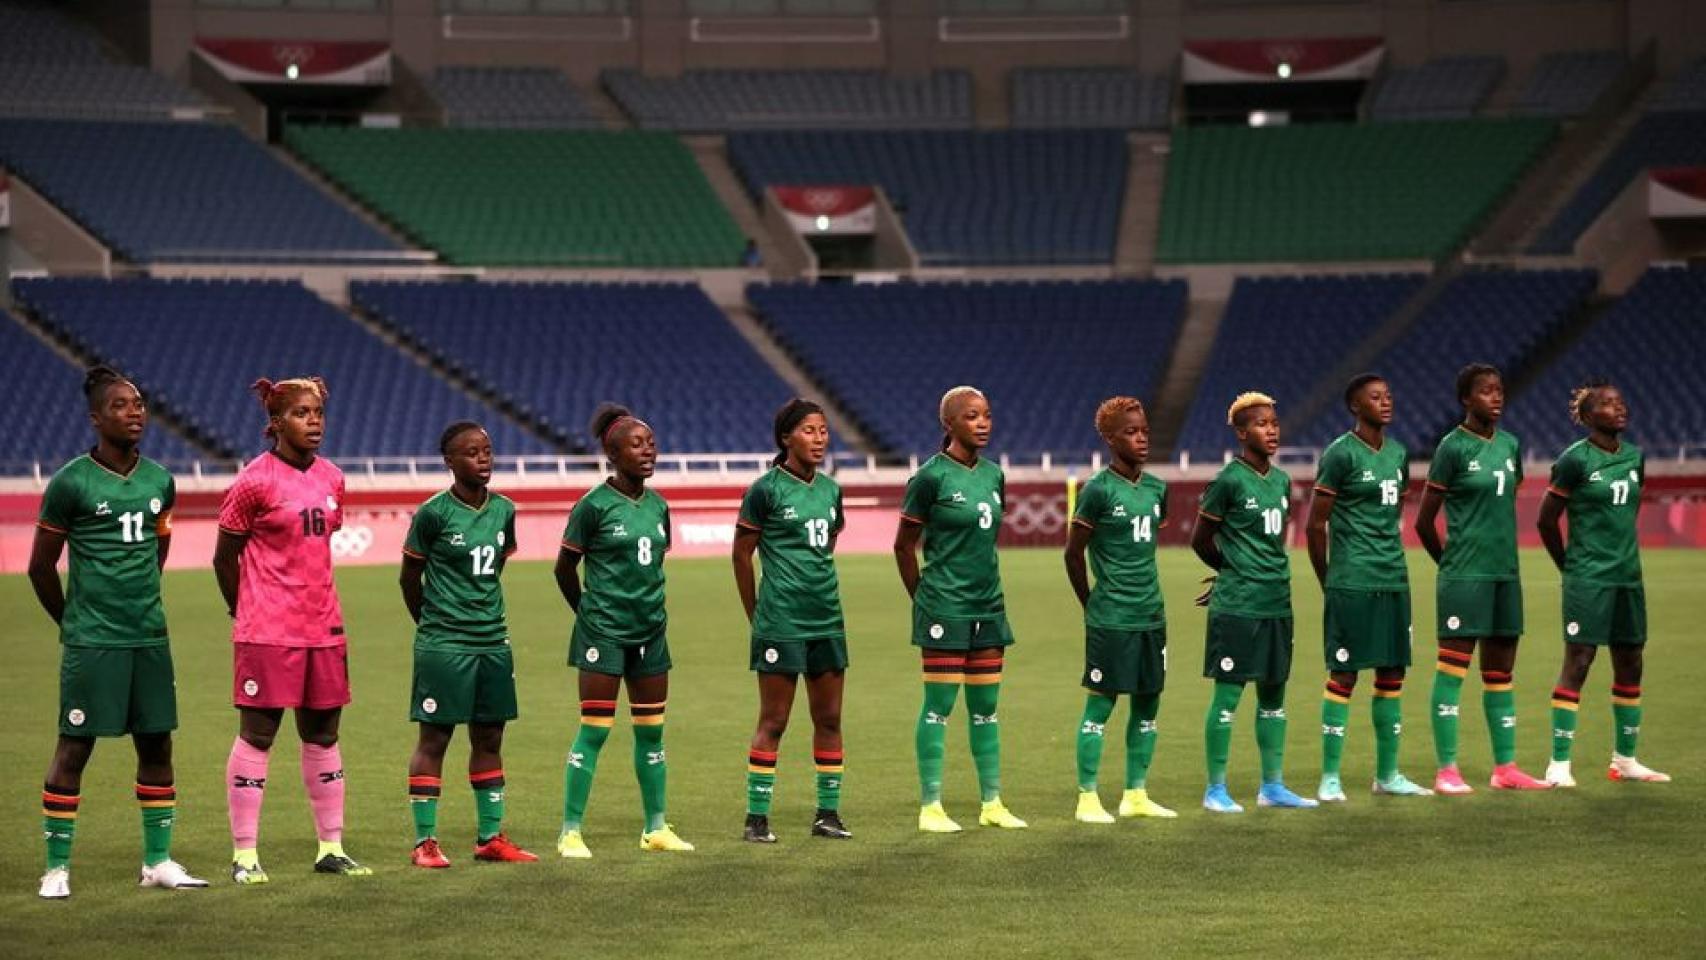 Jugadoras de Zambia durante un partido.